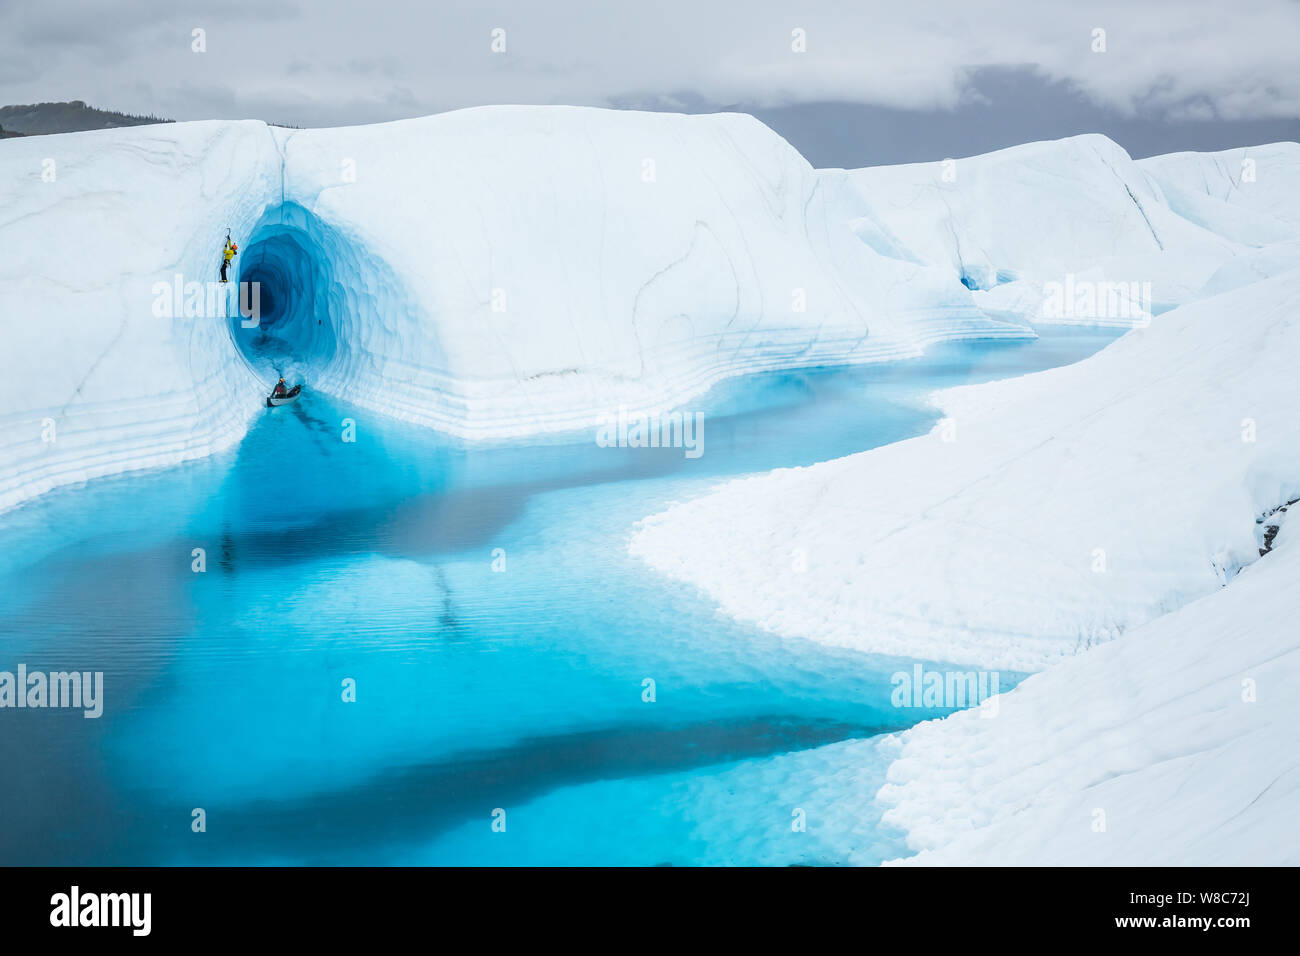 Ice climber führt eine steile Linie vor einem massiven Eishöhle in Alaska. Er hinterlässt ein Kanu mit seinem sichernde in einem blauen See Überflutung der Entra Stockfoto